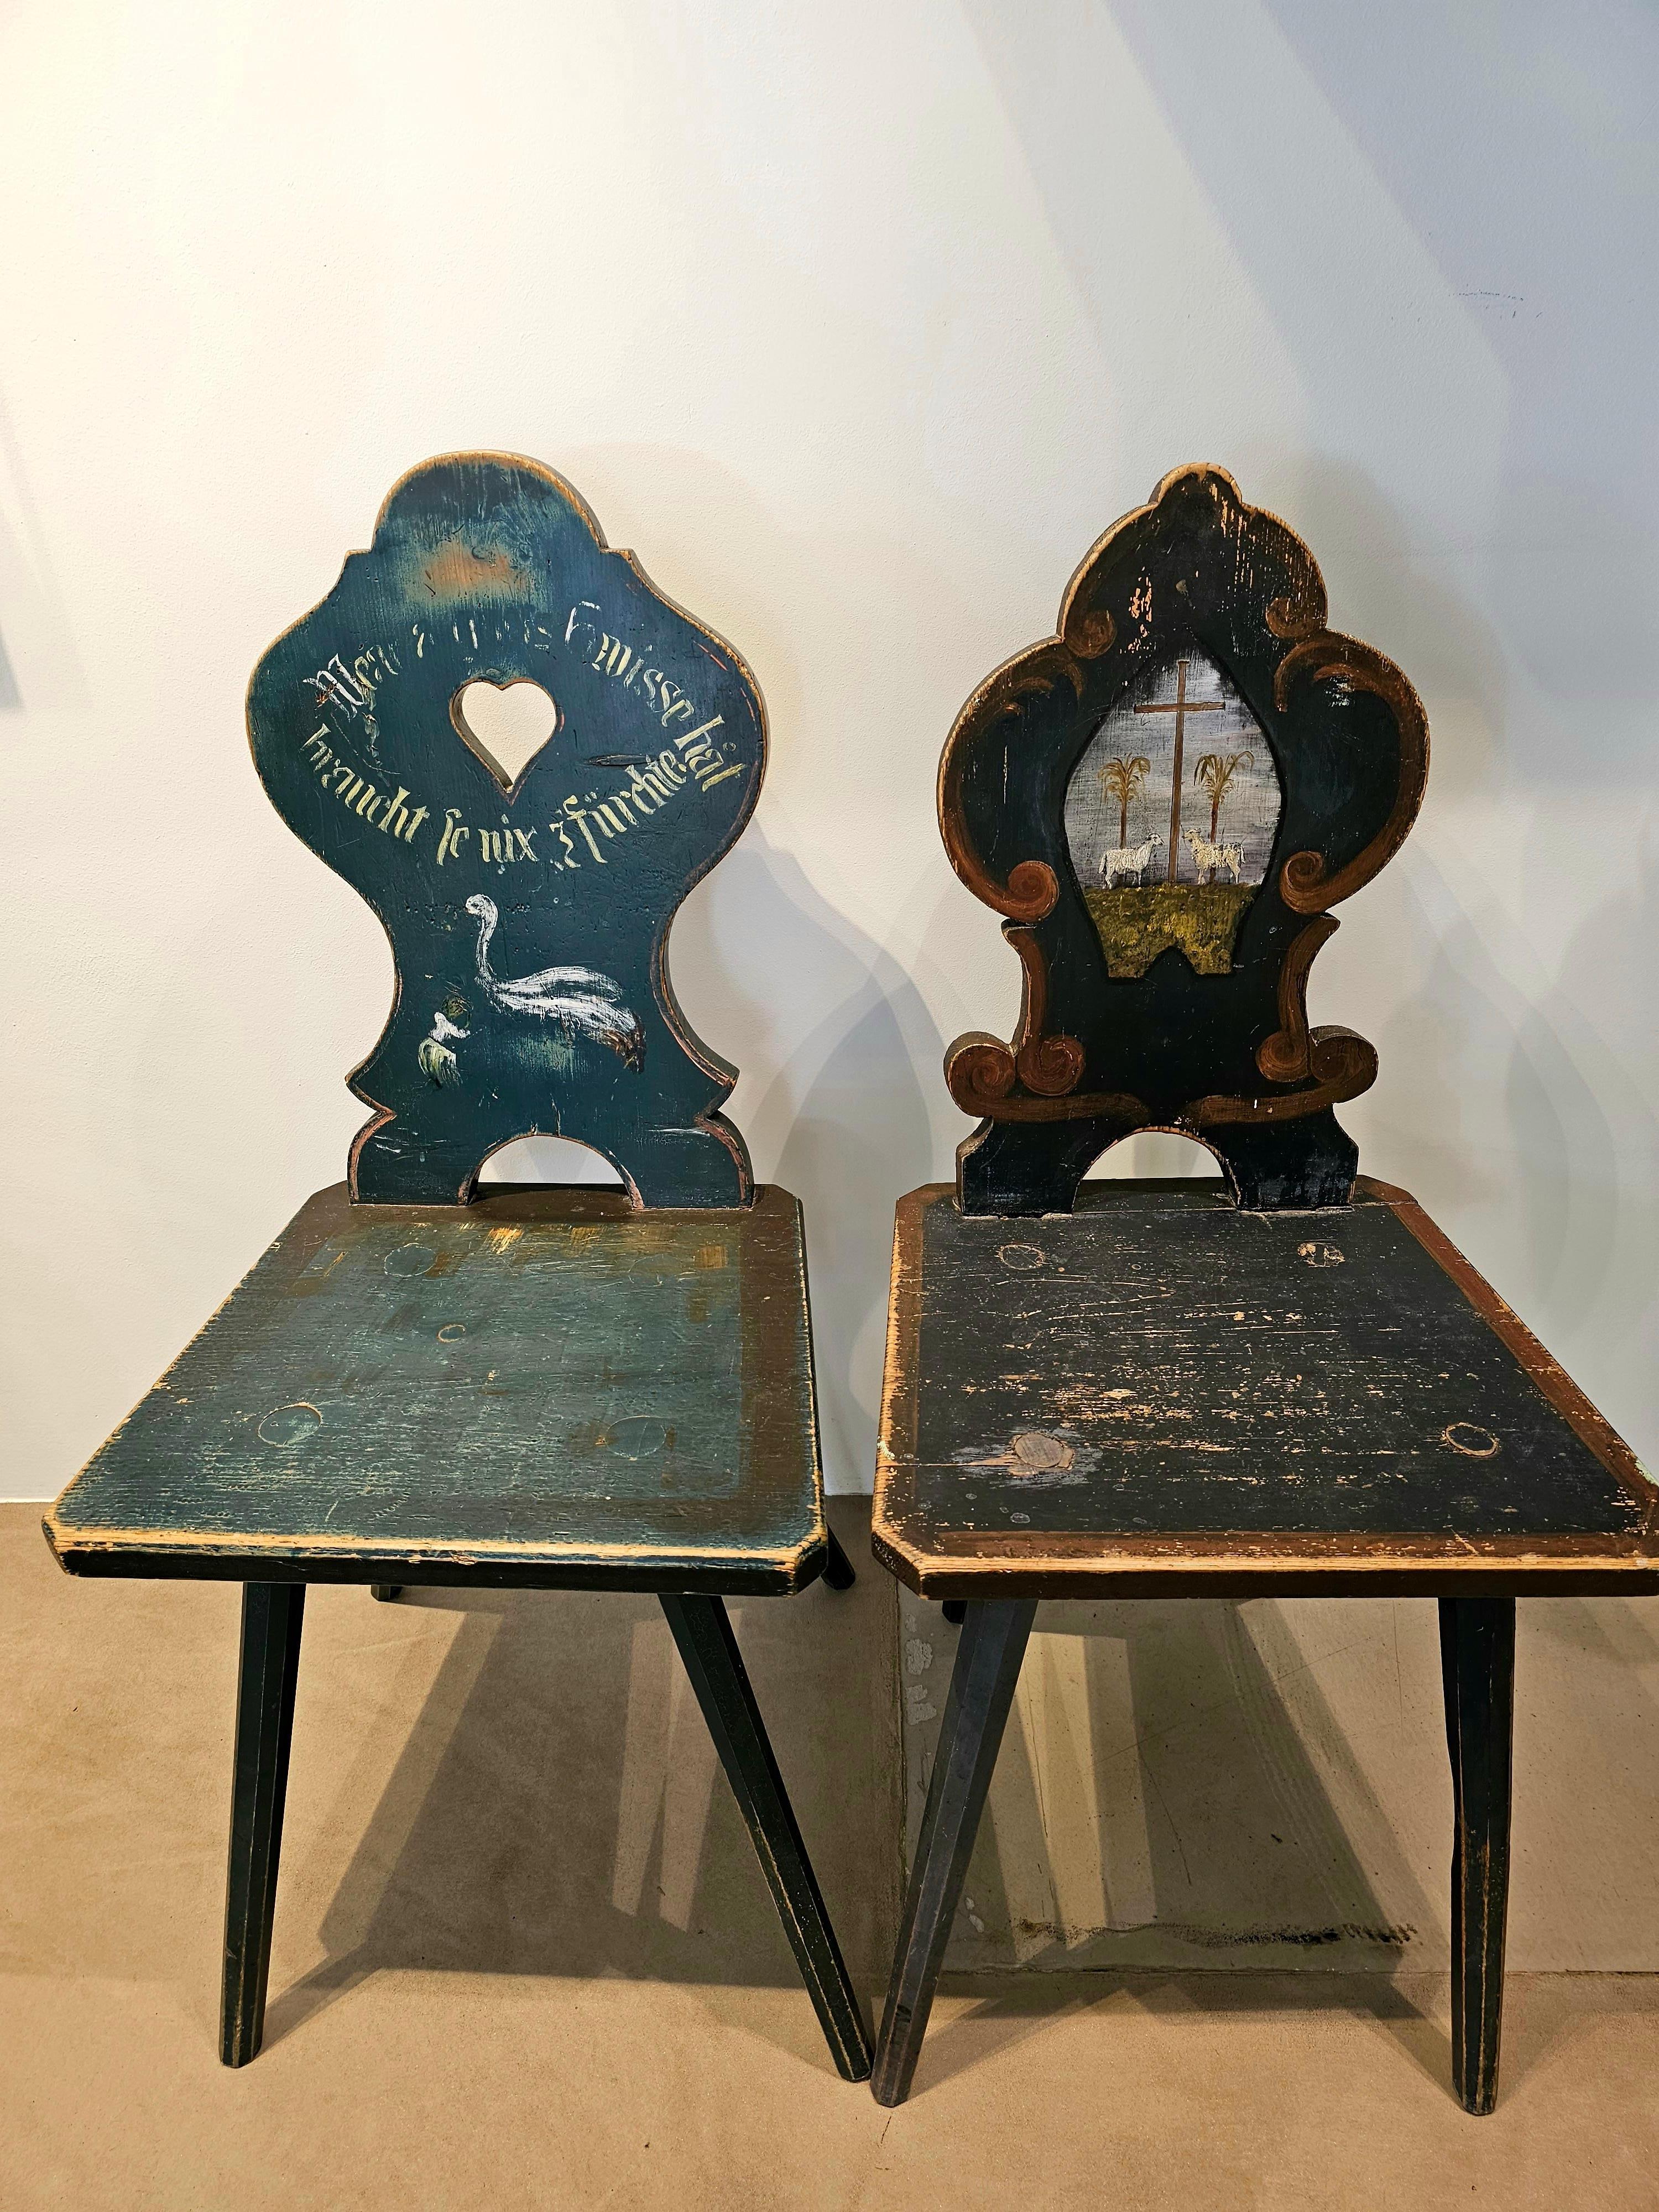 Handbemalter Bauernstuhl aus Holz im Stil des Schwarzwaldes in blau-grüner Farbe mit einem Medaillon, das zwei Schafe zeigt.
Originale Farben und Gemälde ohne Restaurierungen.
Ein zweiter passender Stuhl ist erhältlich